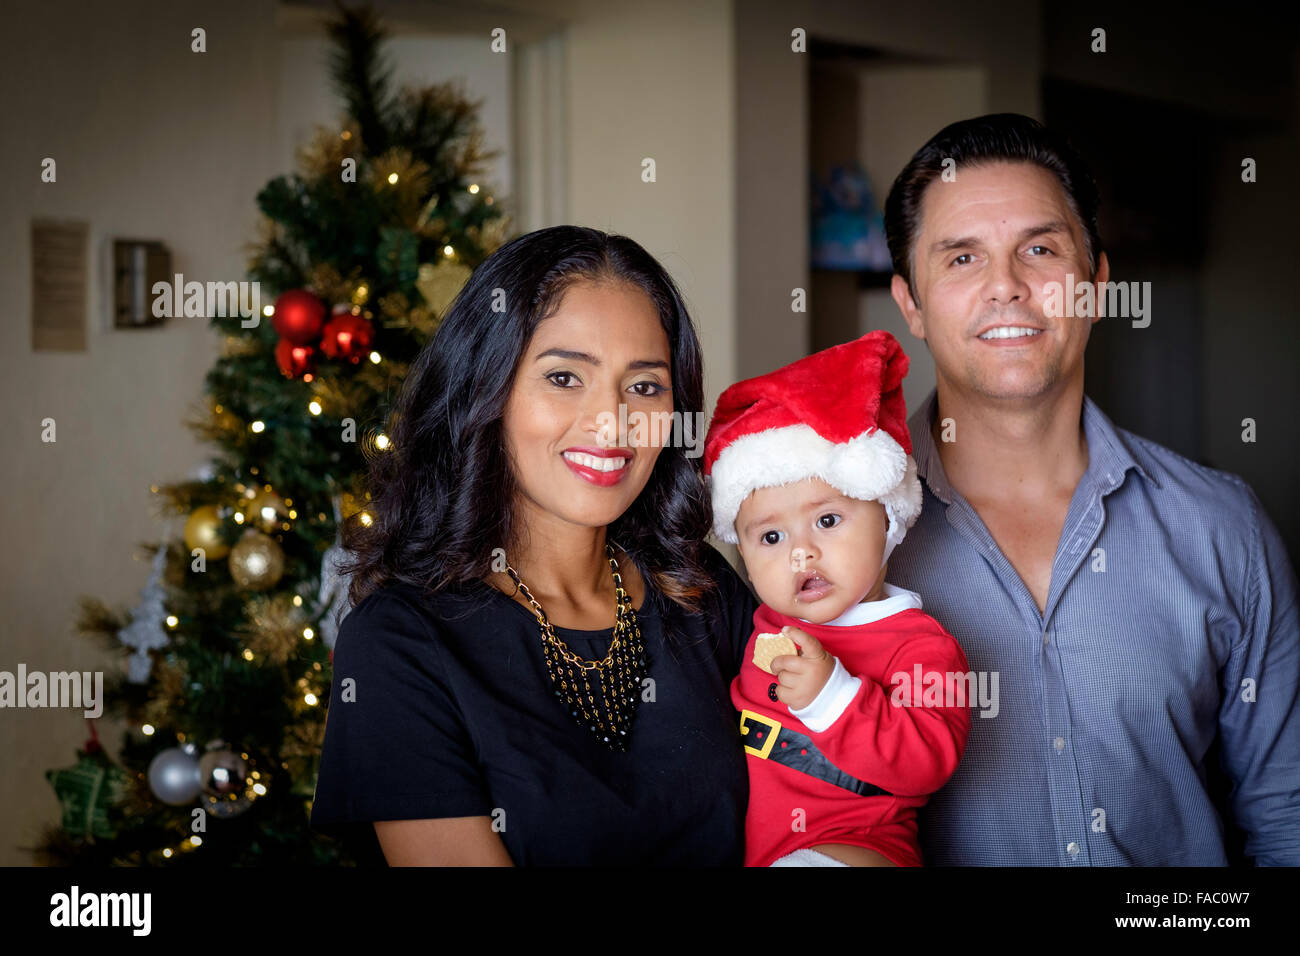 Weihnachten-Porträt einer multiethnischen Familie. Mutter ist der Hispanic, Vater von Ccaucasian Ethnizität. Sie halten die Stockfoto